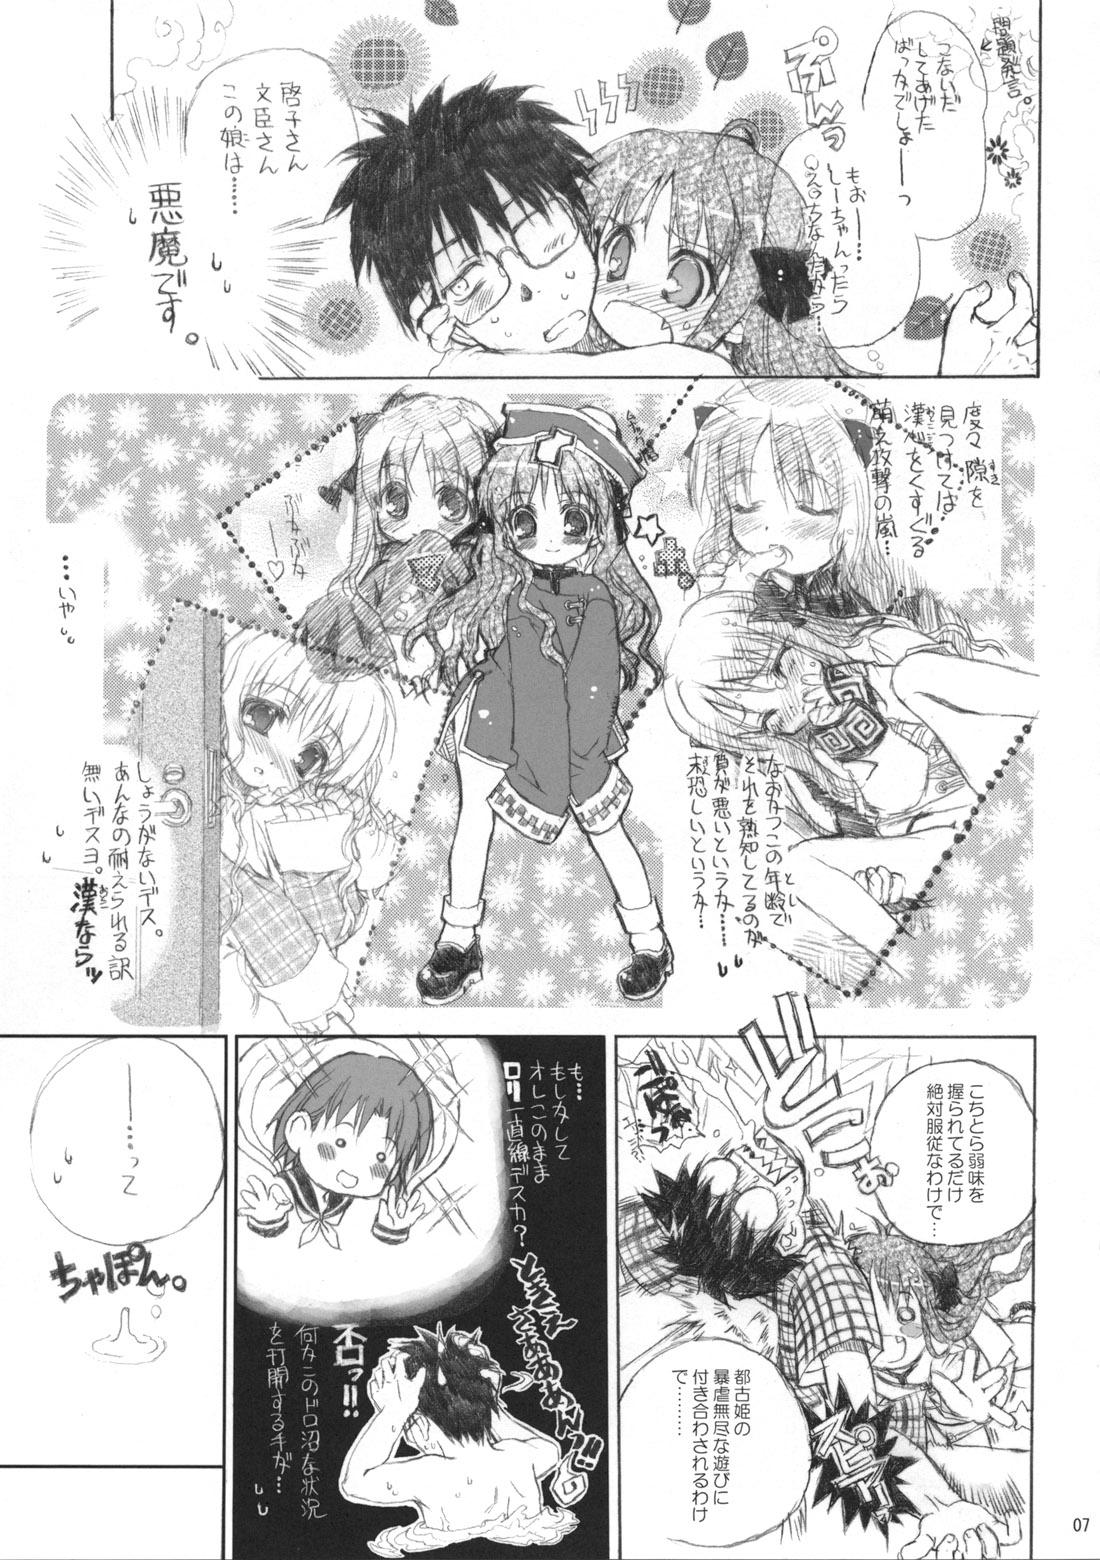 8teen Neko-bus Tei no Hon vol.5 - Tsukihime Big Butt - Page 7